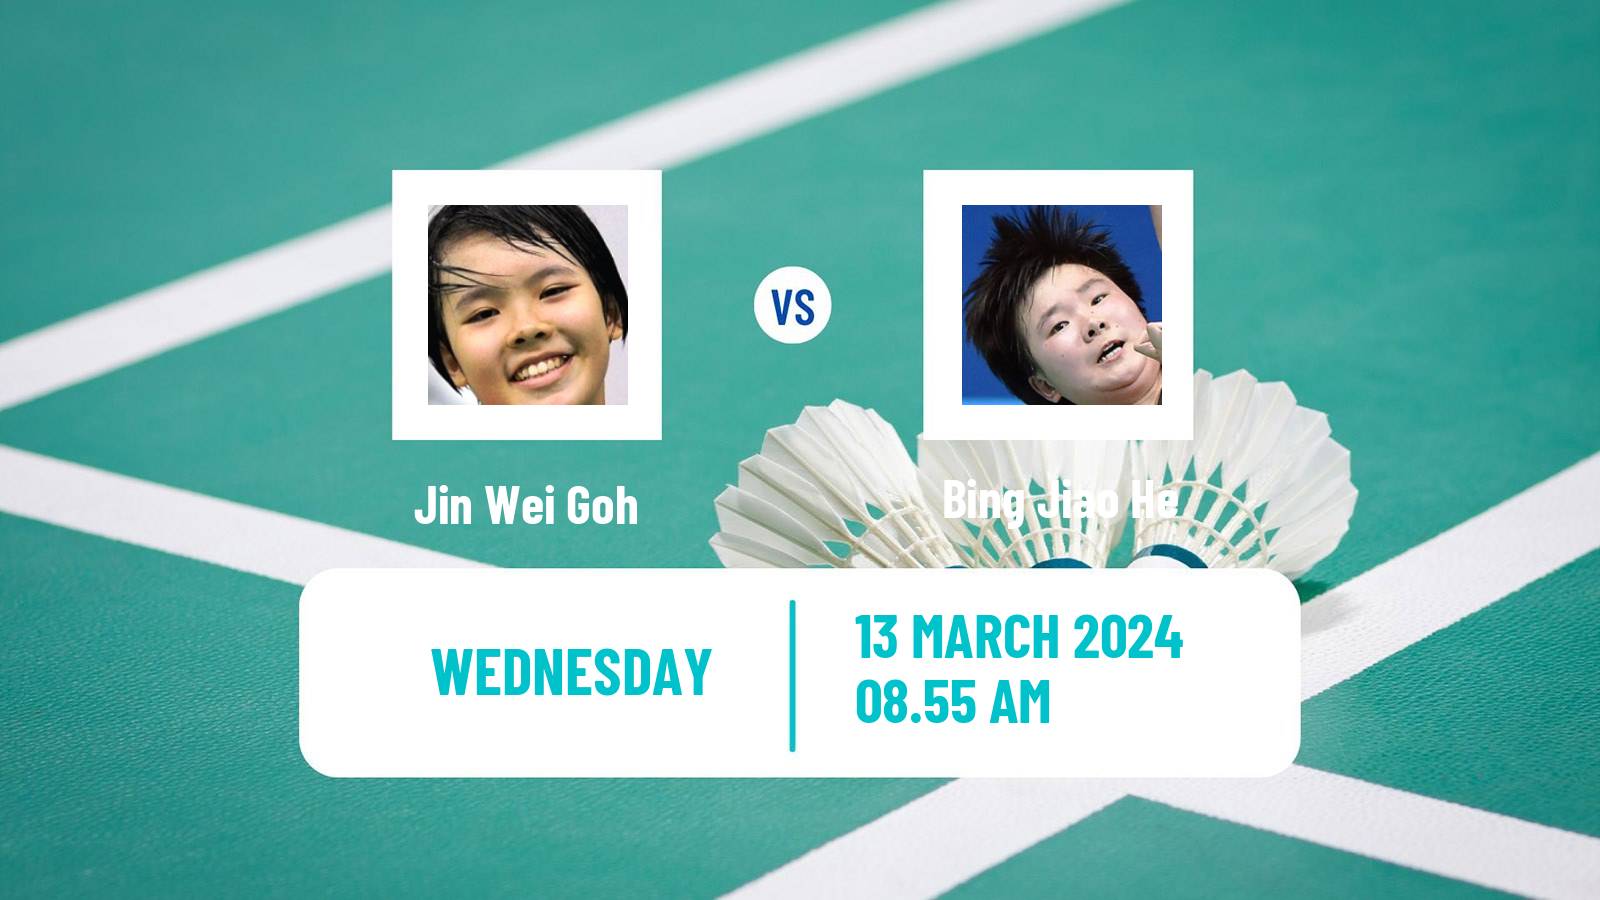 Badminton BWF World Tour All England Open Women Jin Wei Goh - Bing Jiao He